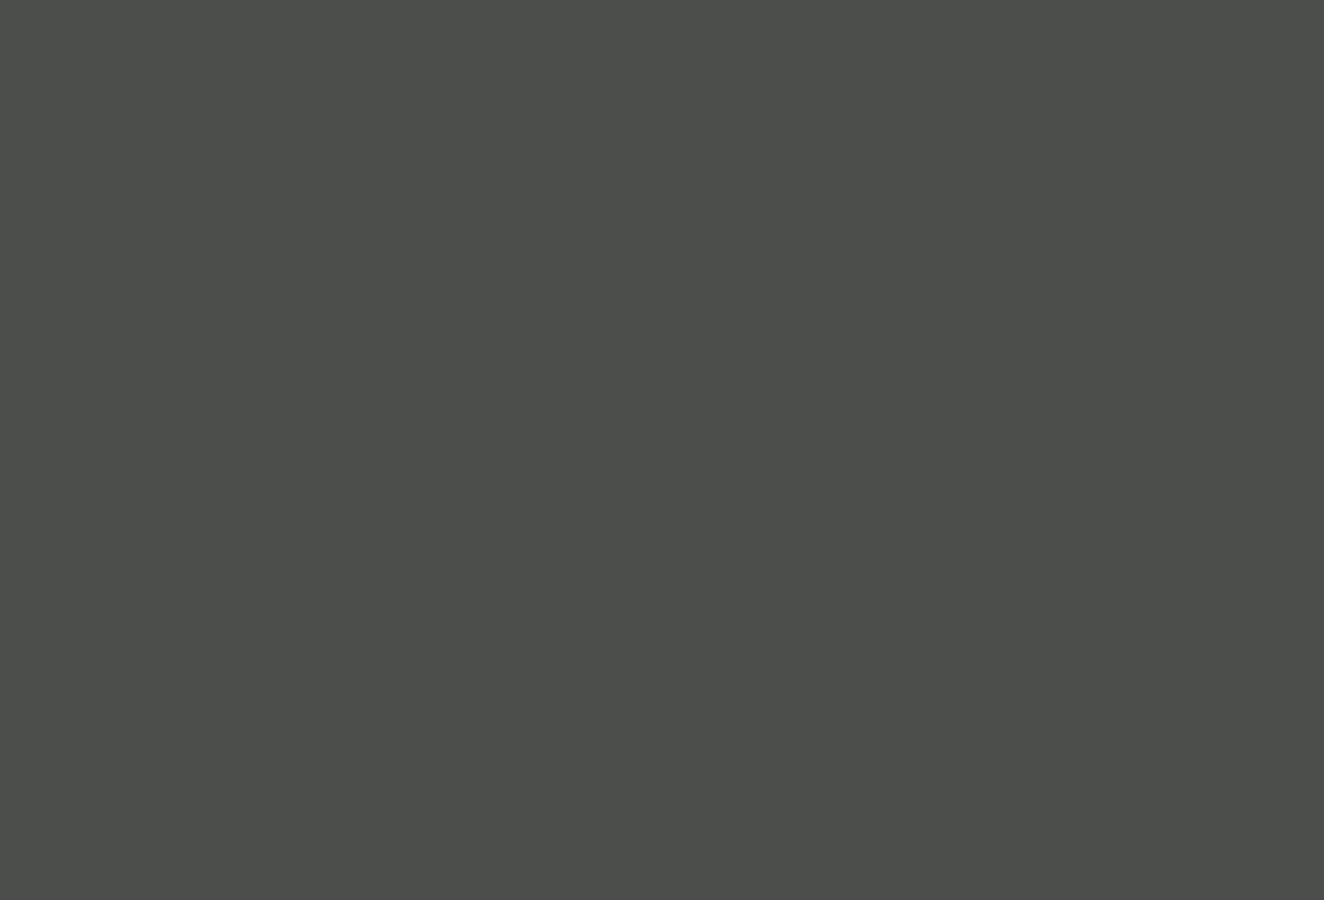 Покрытие подноса лаком на Жостовской фабрике декоративной росписи. Фотография: С. Красильников / ИТАР–ТАСС